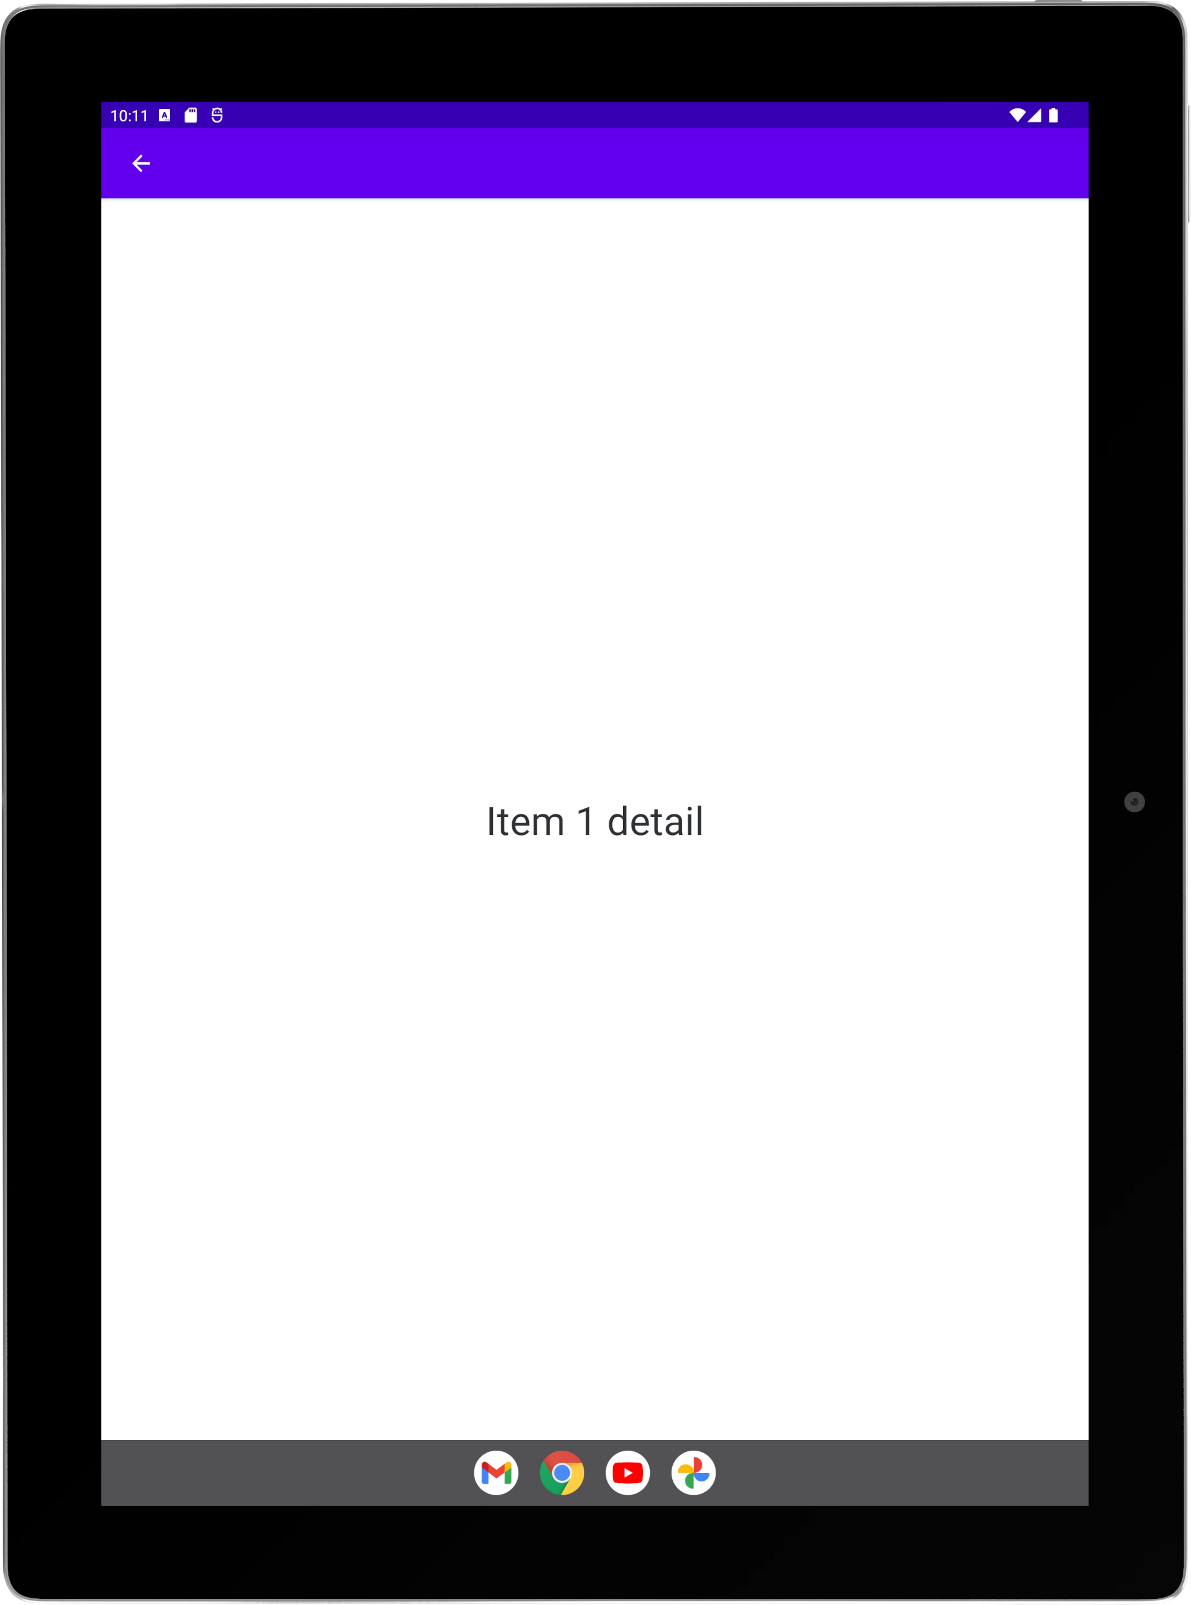 Atividades de lista e detalhes empilhadas na orientação retrato em um tablet grande.